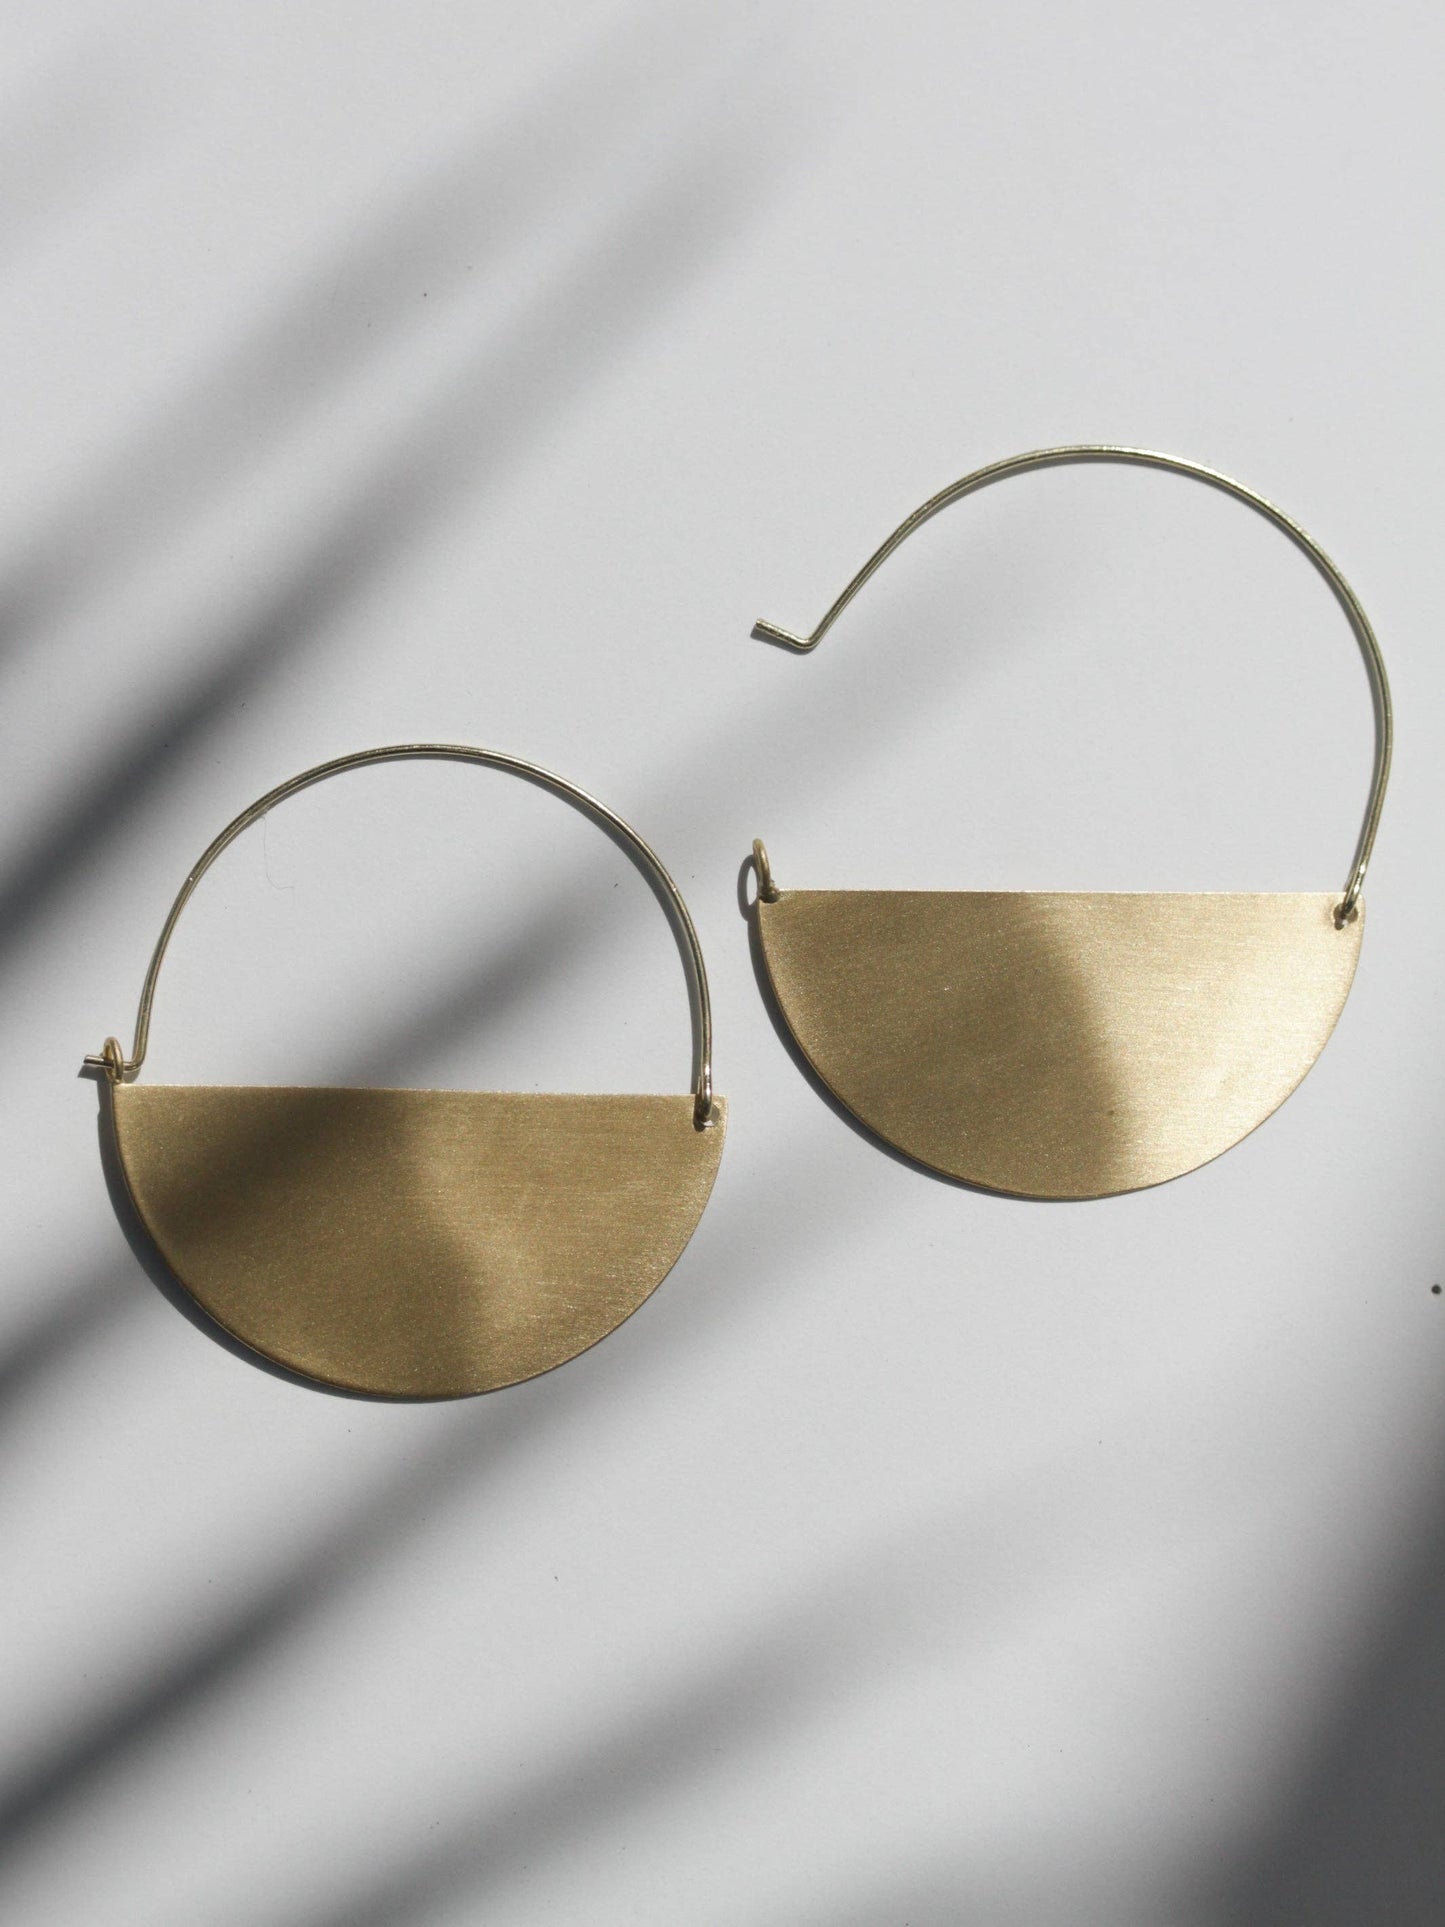 Matte Gold Half Moon Earrings: Medium 1.5" Earrings Rover & Kin   